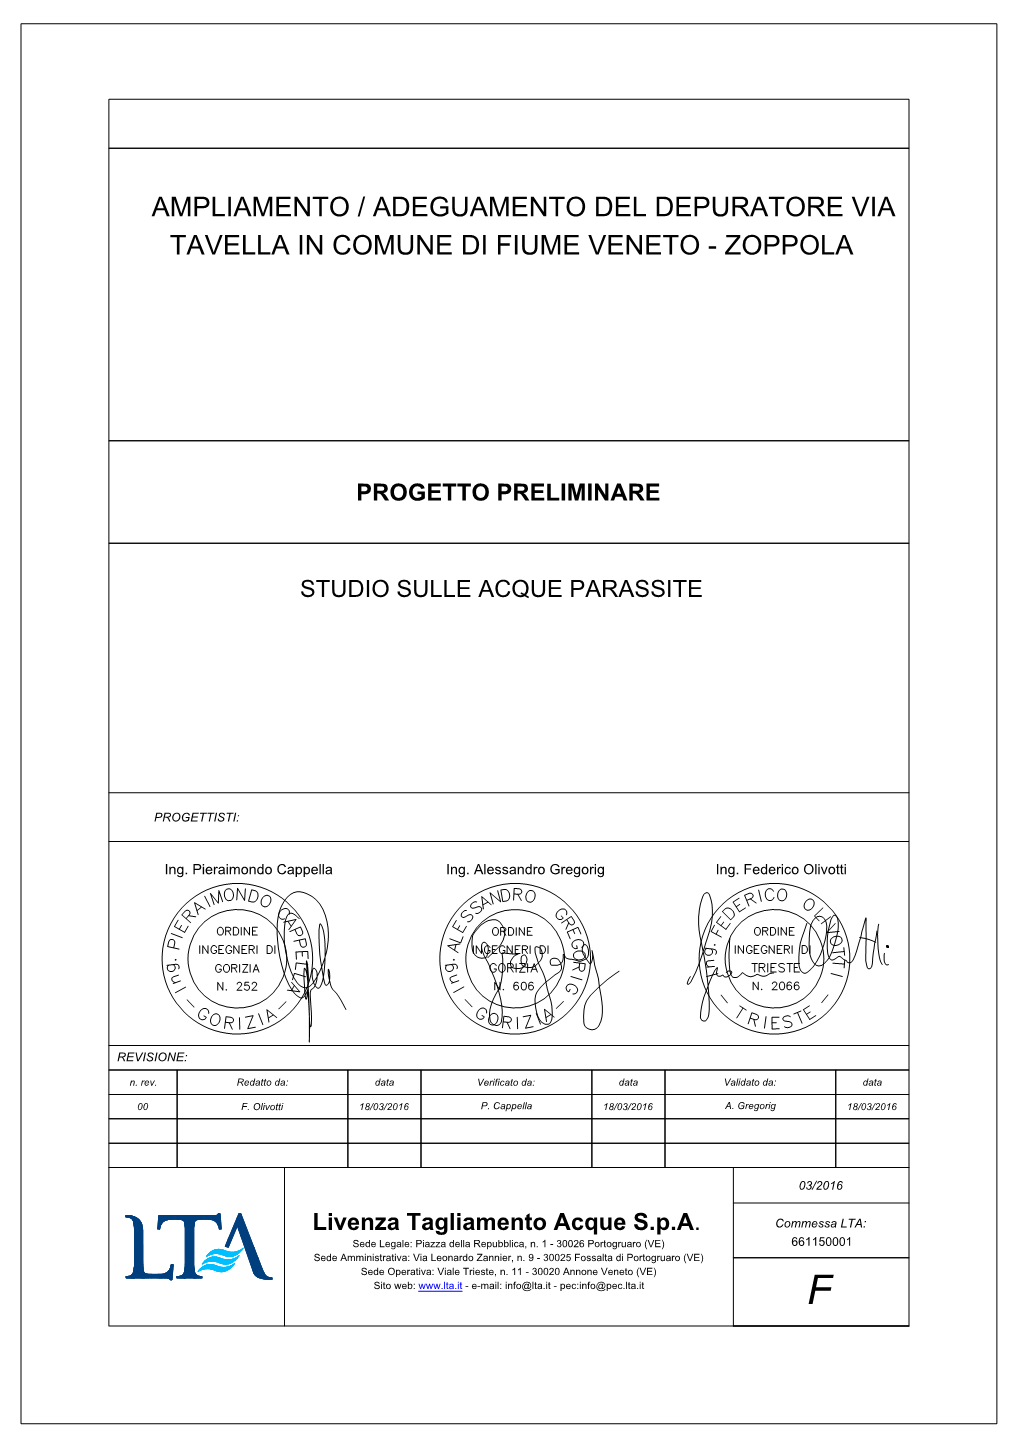 Ampliamento / Adeguamento Del Depuratore Via Tavella in Comune Di Fiume Veneto - Zoppola